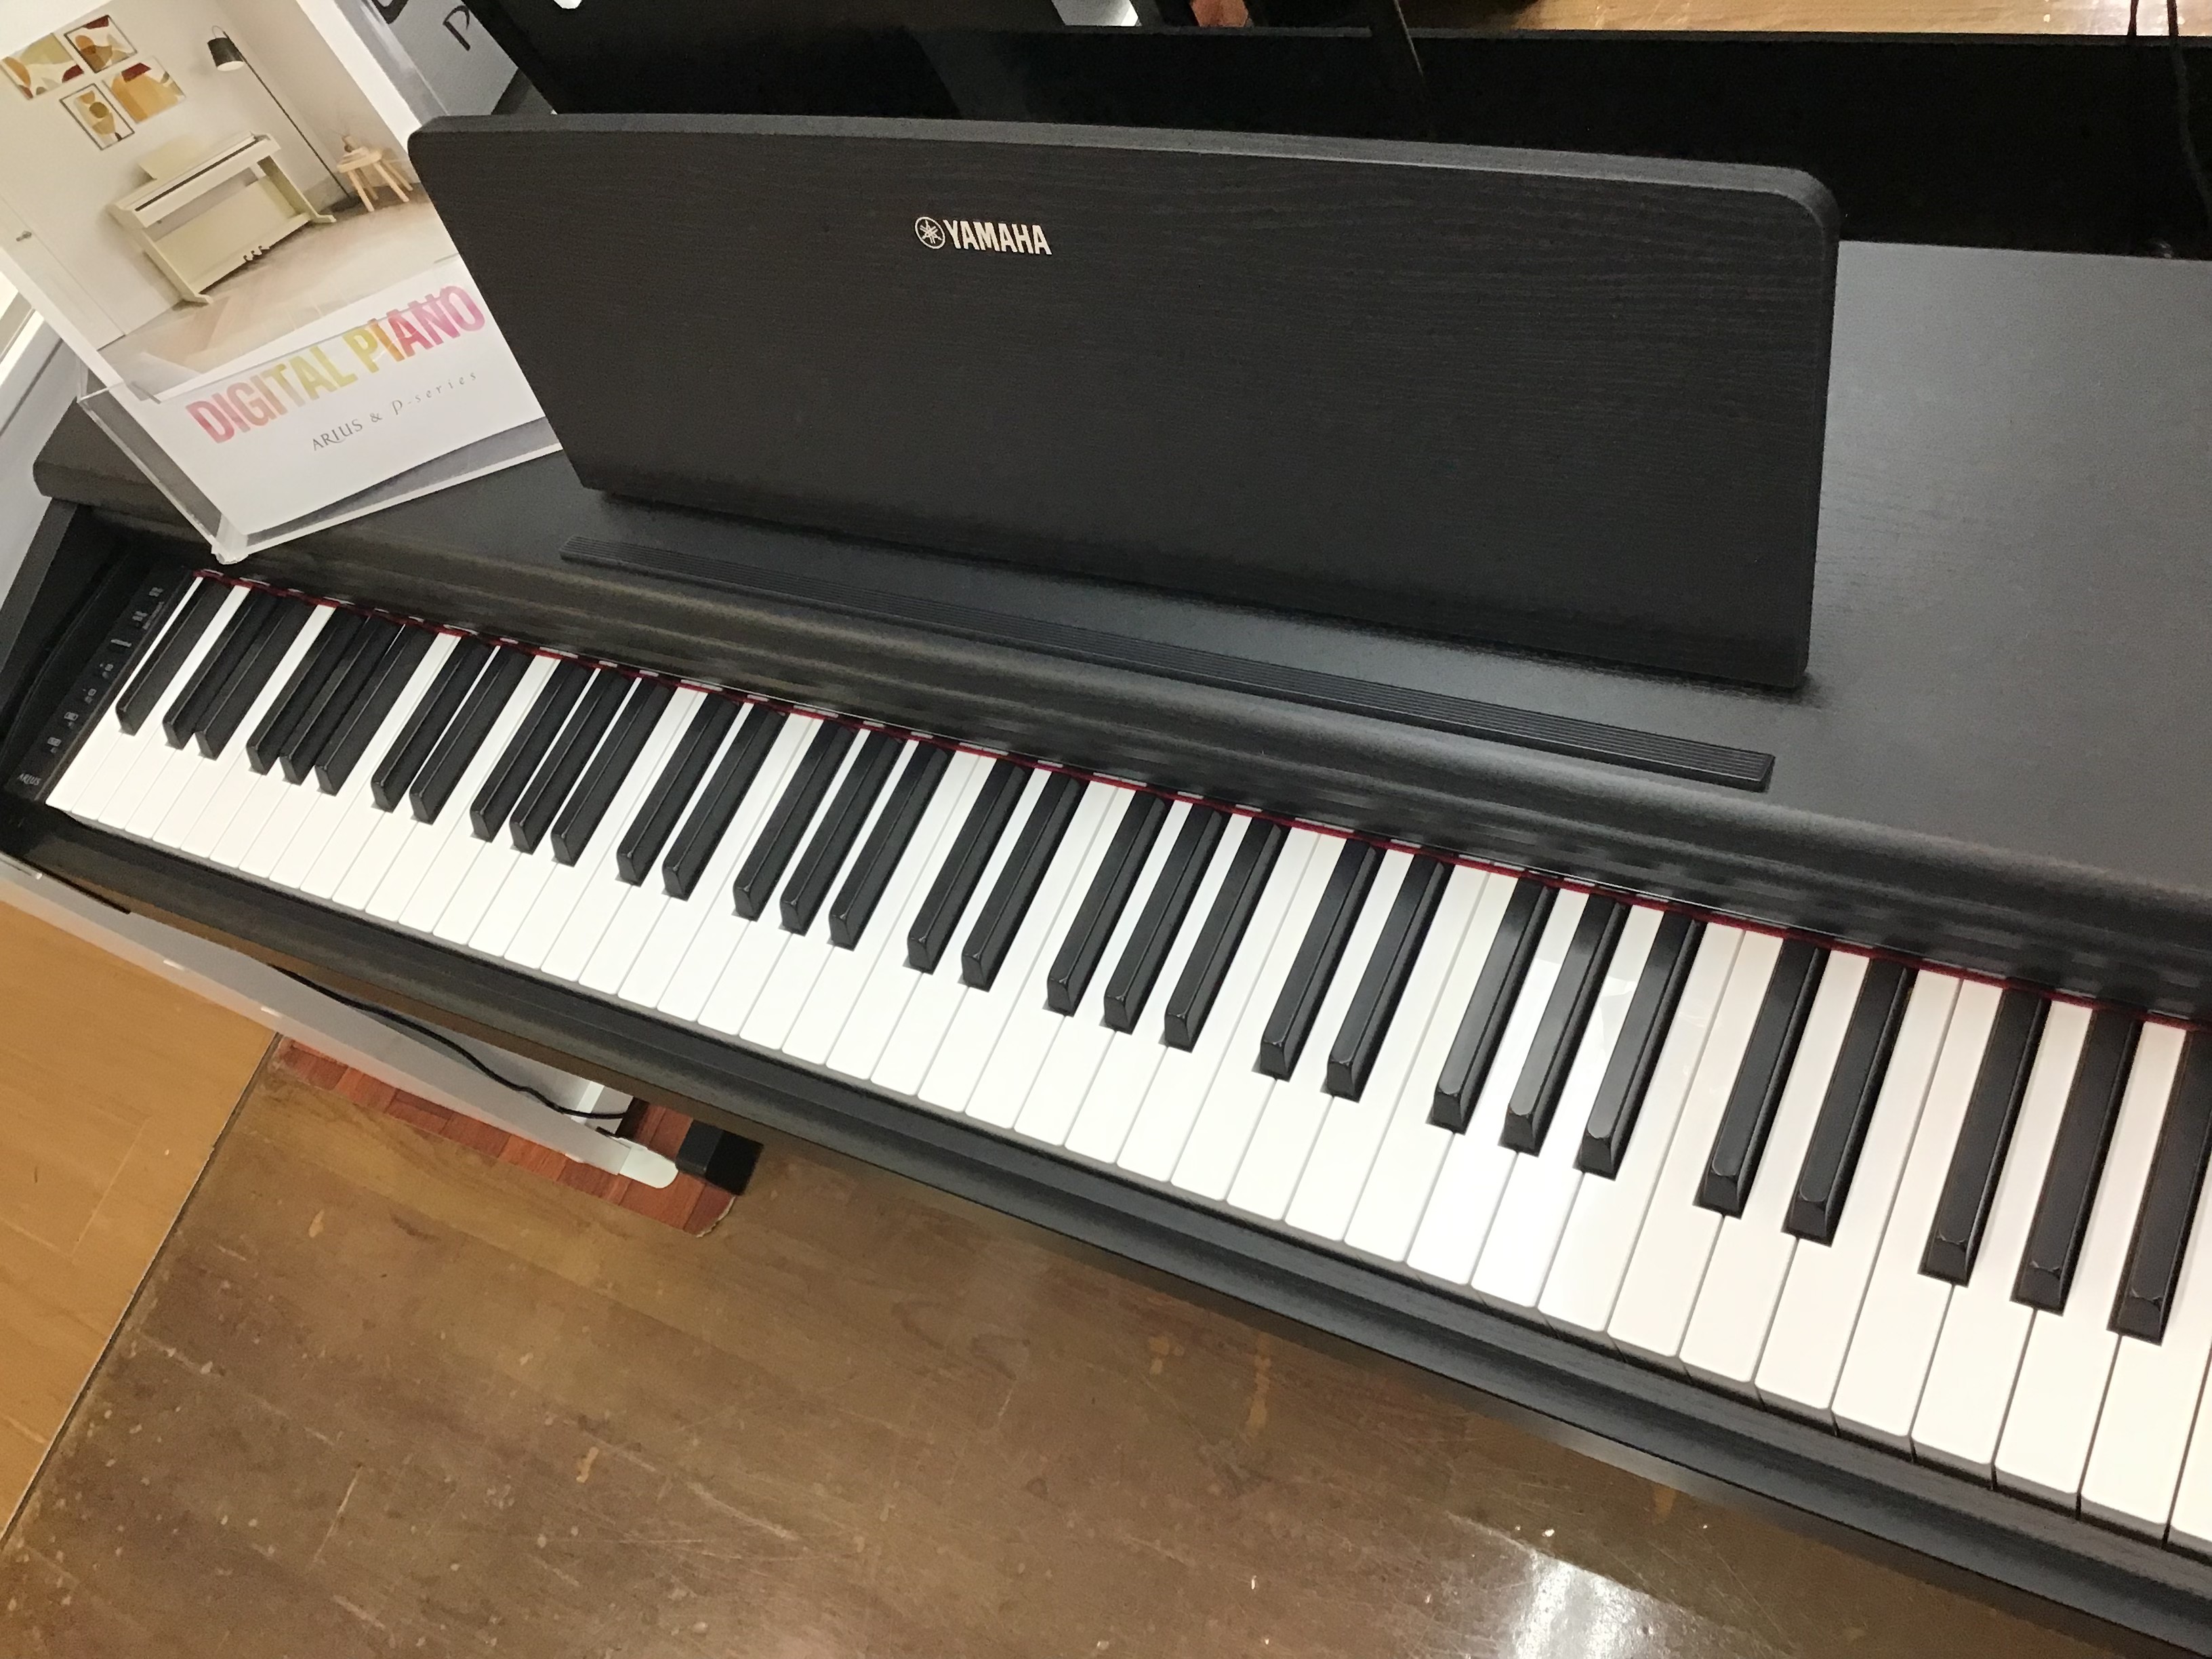 高品位なピアノ性能の入門者向け電子ピアノ YAMAHAの新製品YDP-145ブラックウッド調が長岡店に入荷しました! 特徴 コンサートグランドピアノ「CFX」からサンプリングした音源の改良により、繊細さと力強さを併せもつ彩豊かな音色変化を実現 ヤマハの最高峰コンサートグランドピアノ「CFX」からサン […]